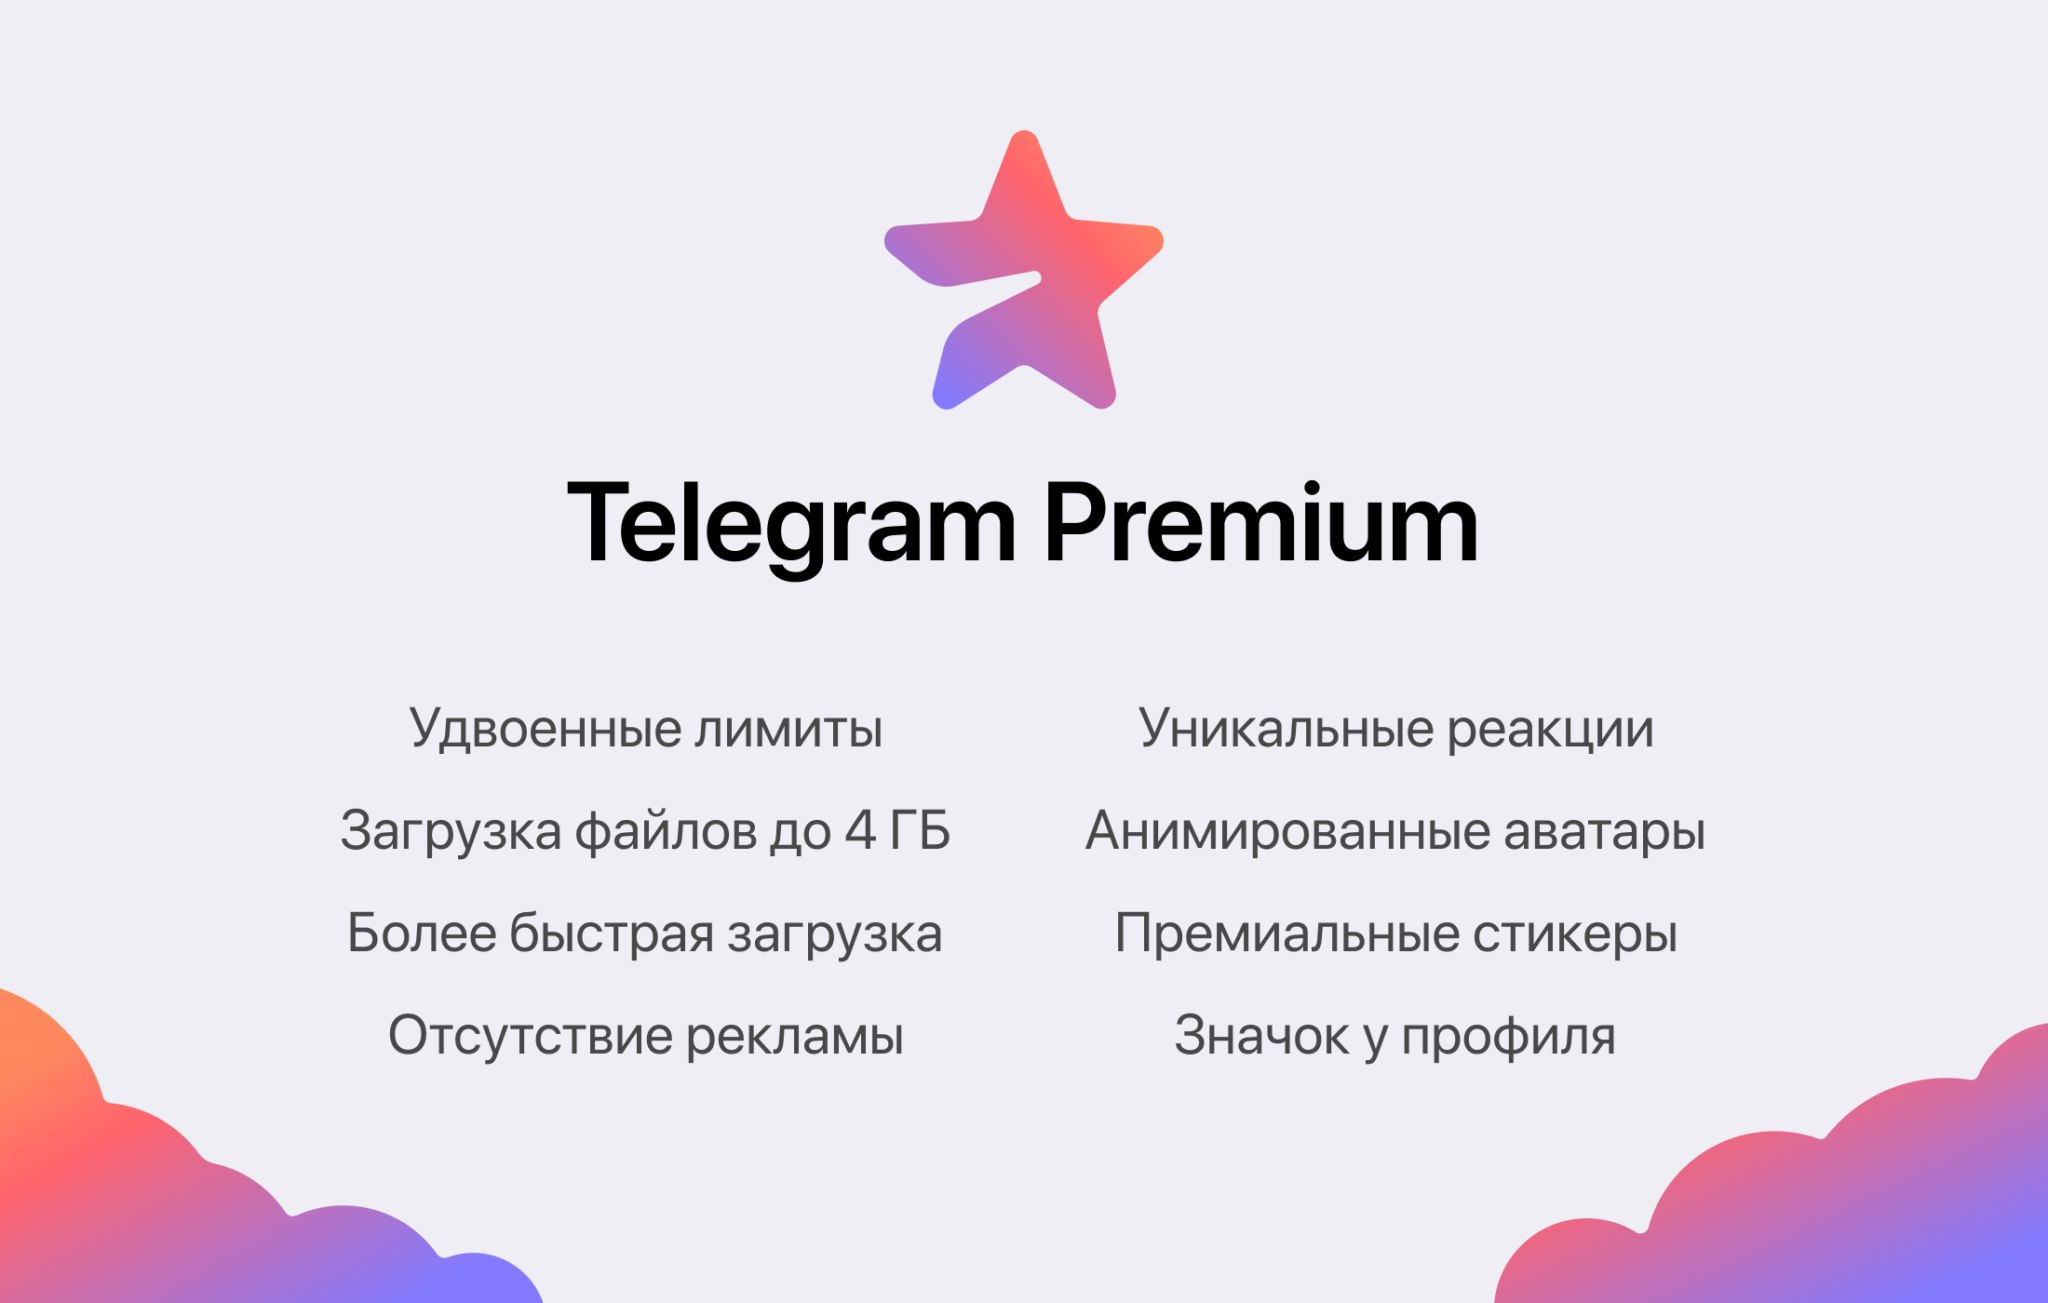 Відсутність реклами, відправка файлів до 4 ГБ та унікальні реакції: у бета-версії Telegram з'явилася Premium-передплата